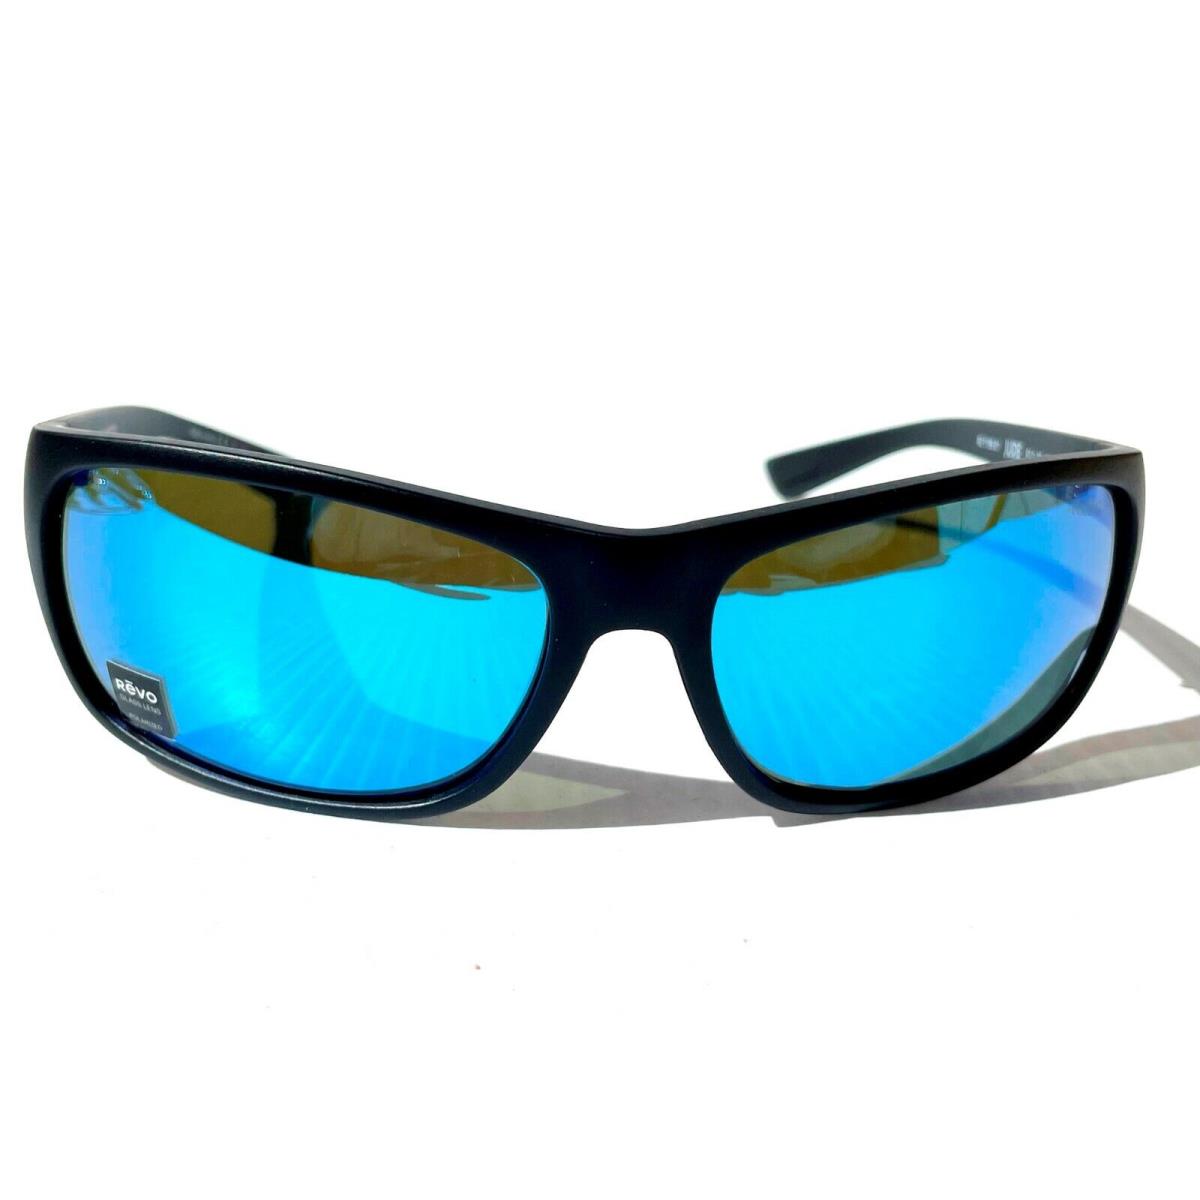 Revo sunglasses JUDE - Black Frame, Blue Lens